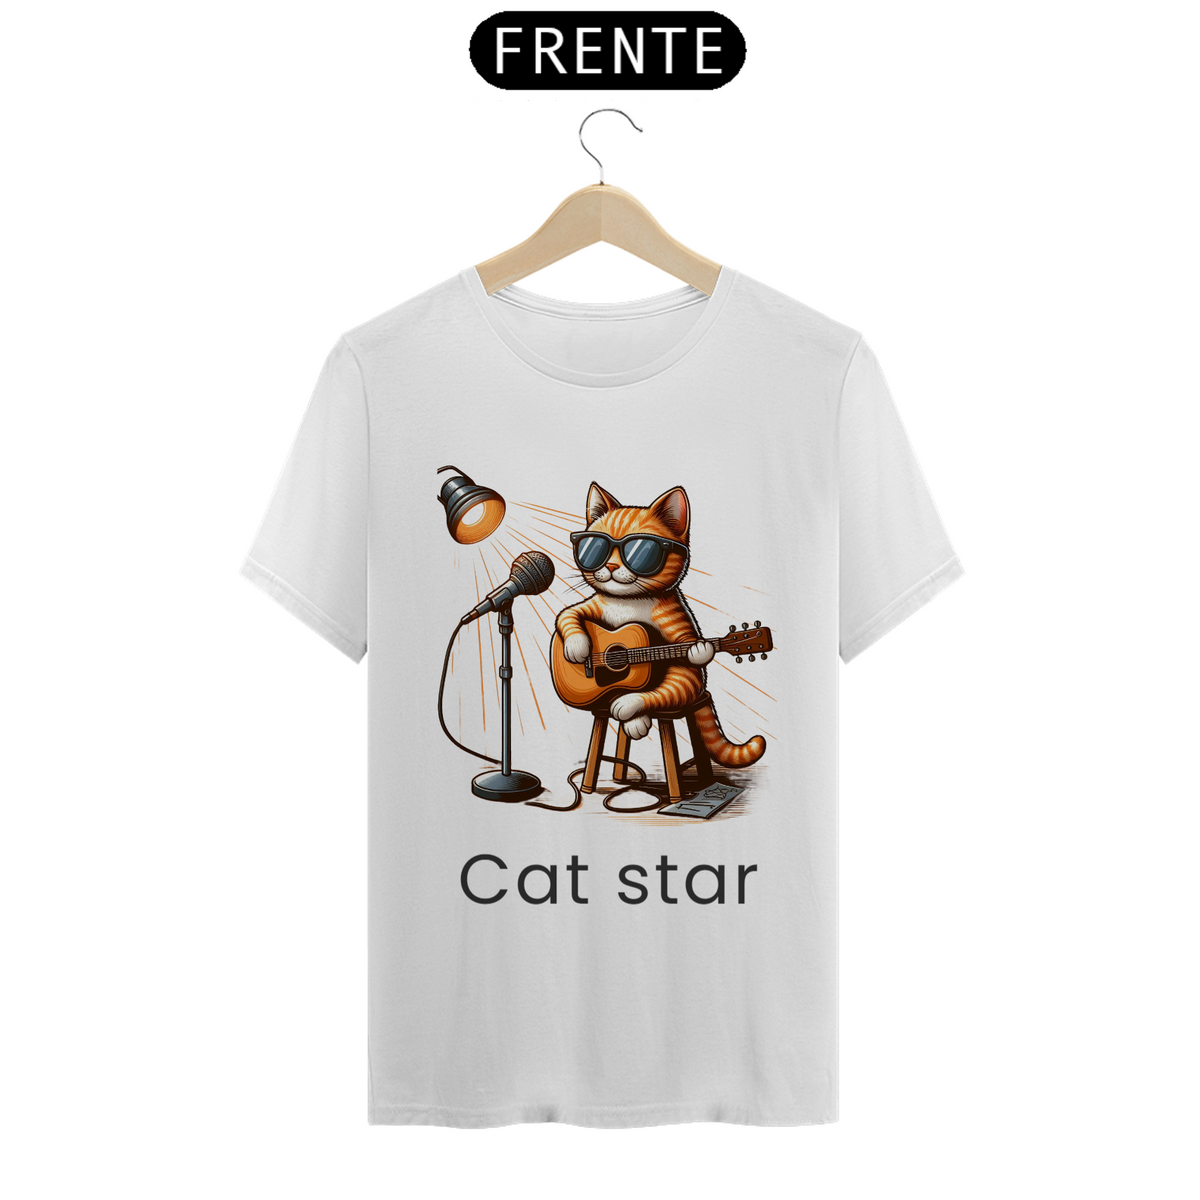 Nome do produto: Camiseta Cat Star